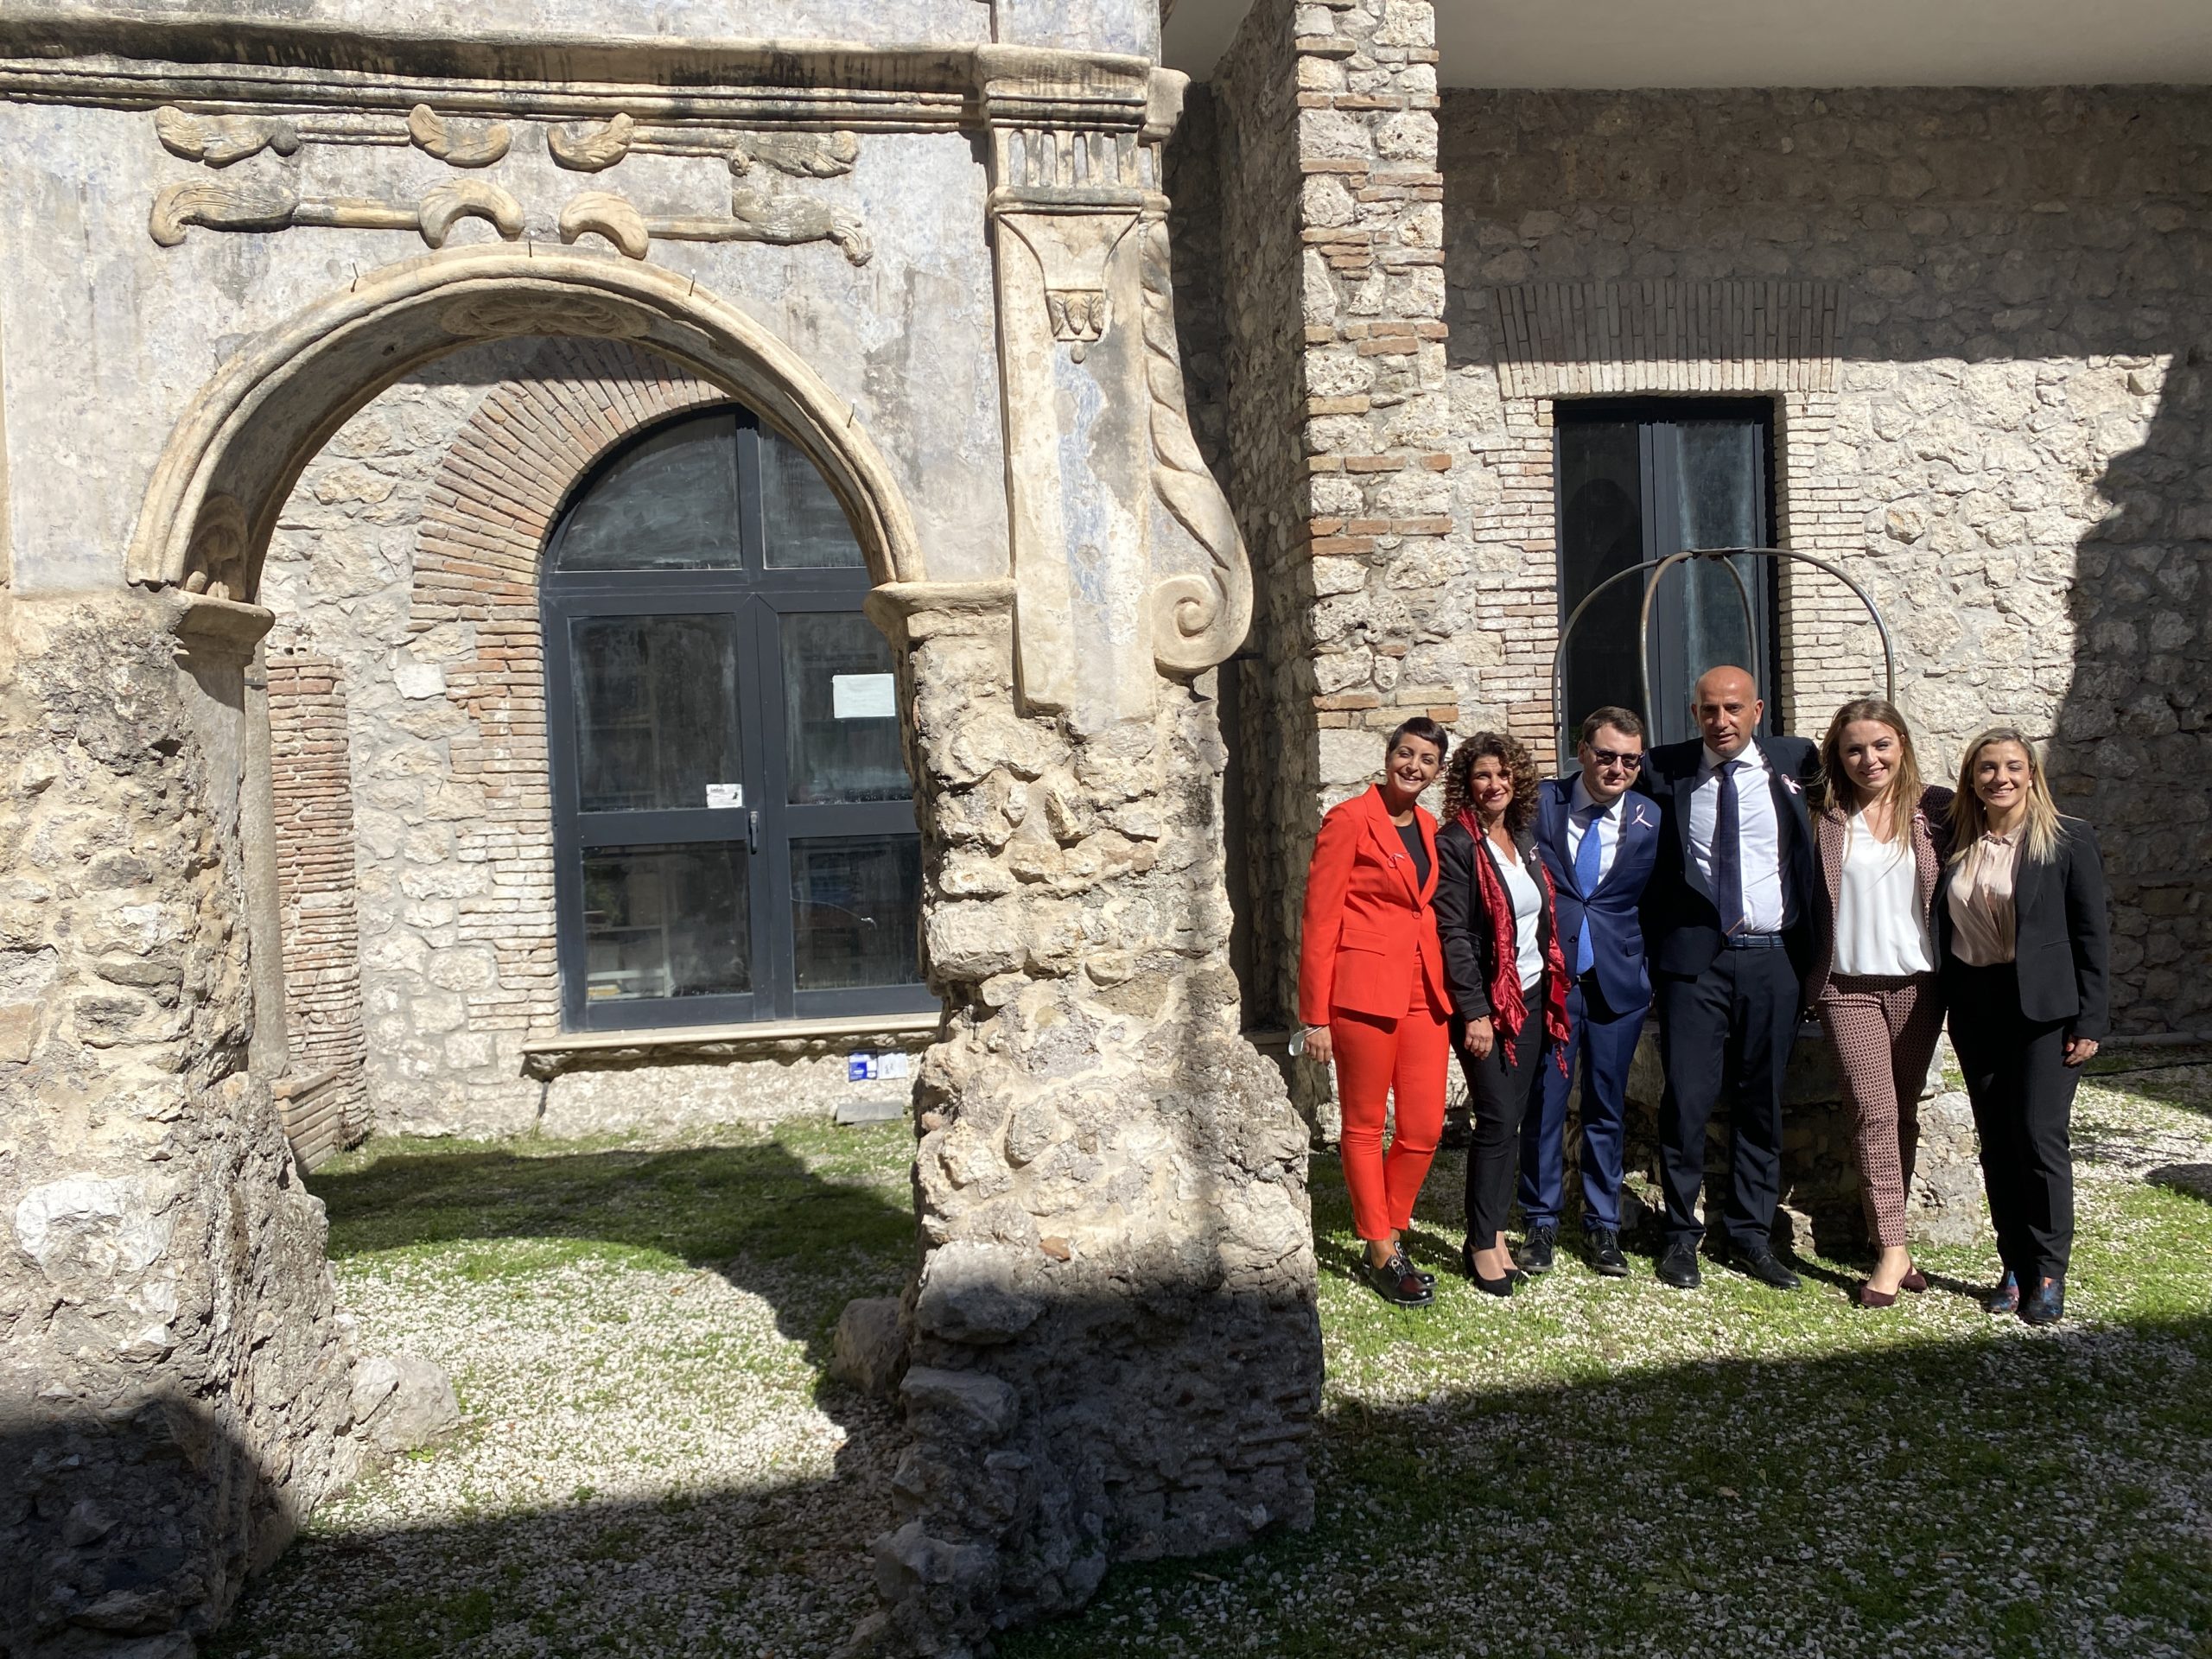 Il sindaco di Minturno con i suoi assessori nel cortile del palazzo comunale. da Sx Pragliola, Alicandro, Orlandi, sindaco Stefanelli, Venturo, Pelle